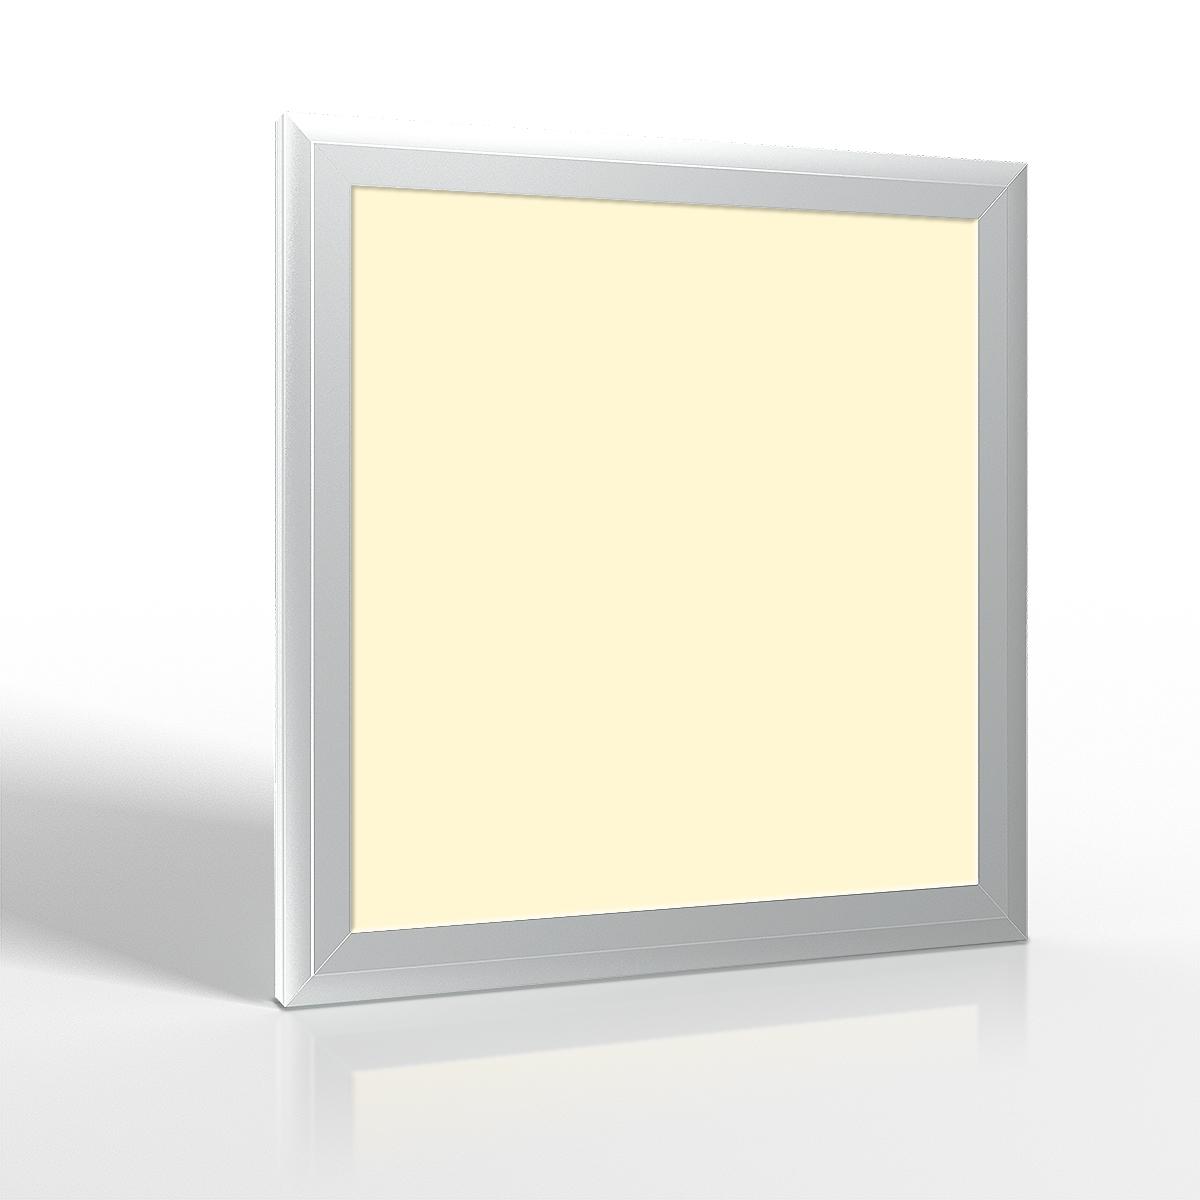 LED Panel 30x30cm 18W Rahmen silber - Lichtfarbe: Warmweiß 3000K